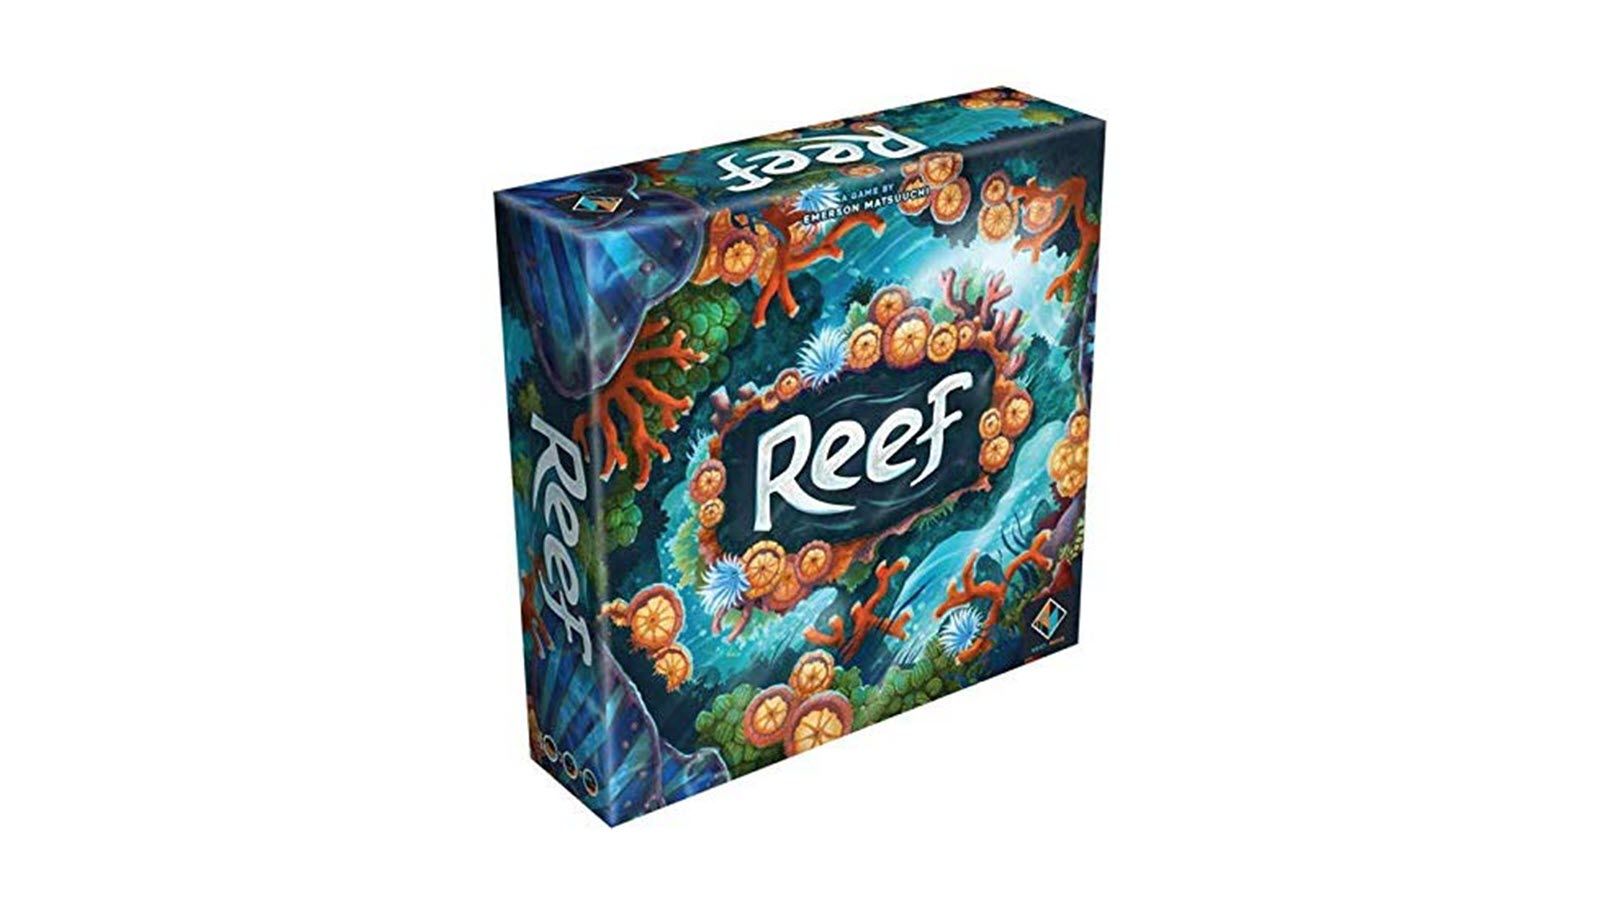 The Reef board game box.